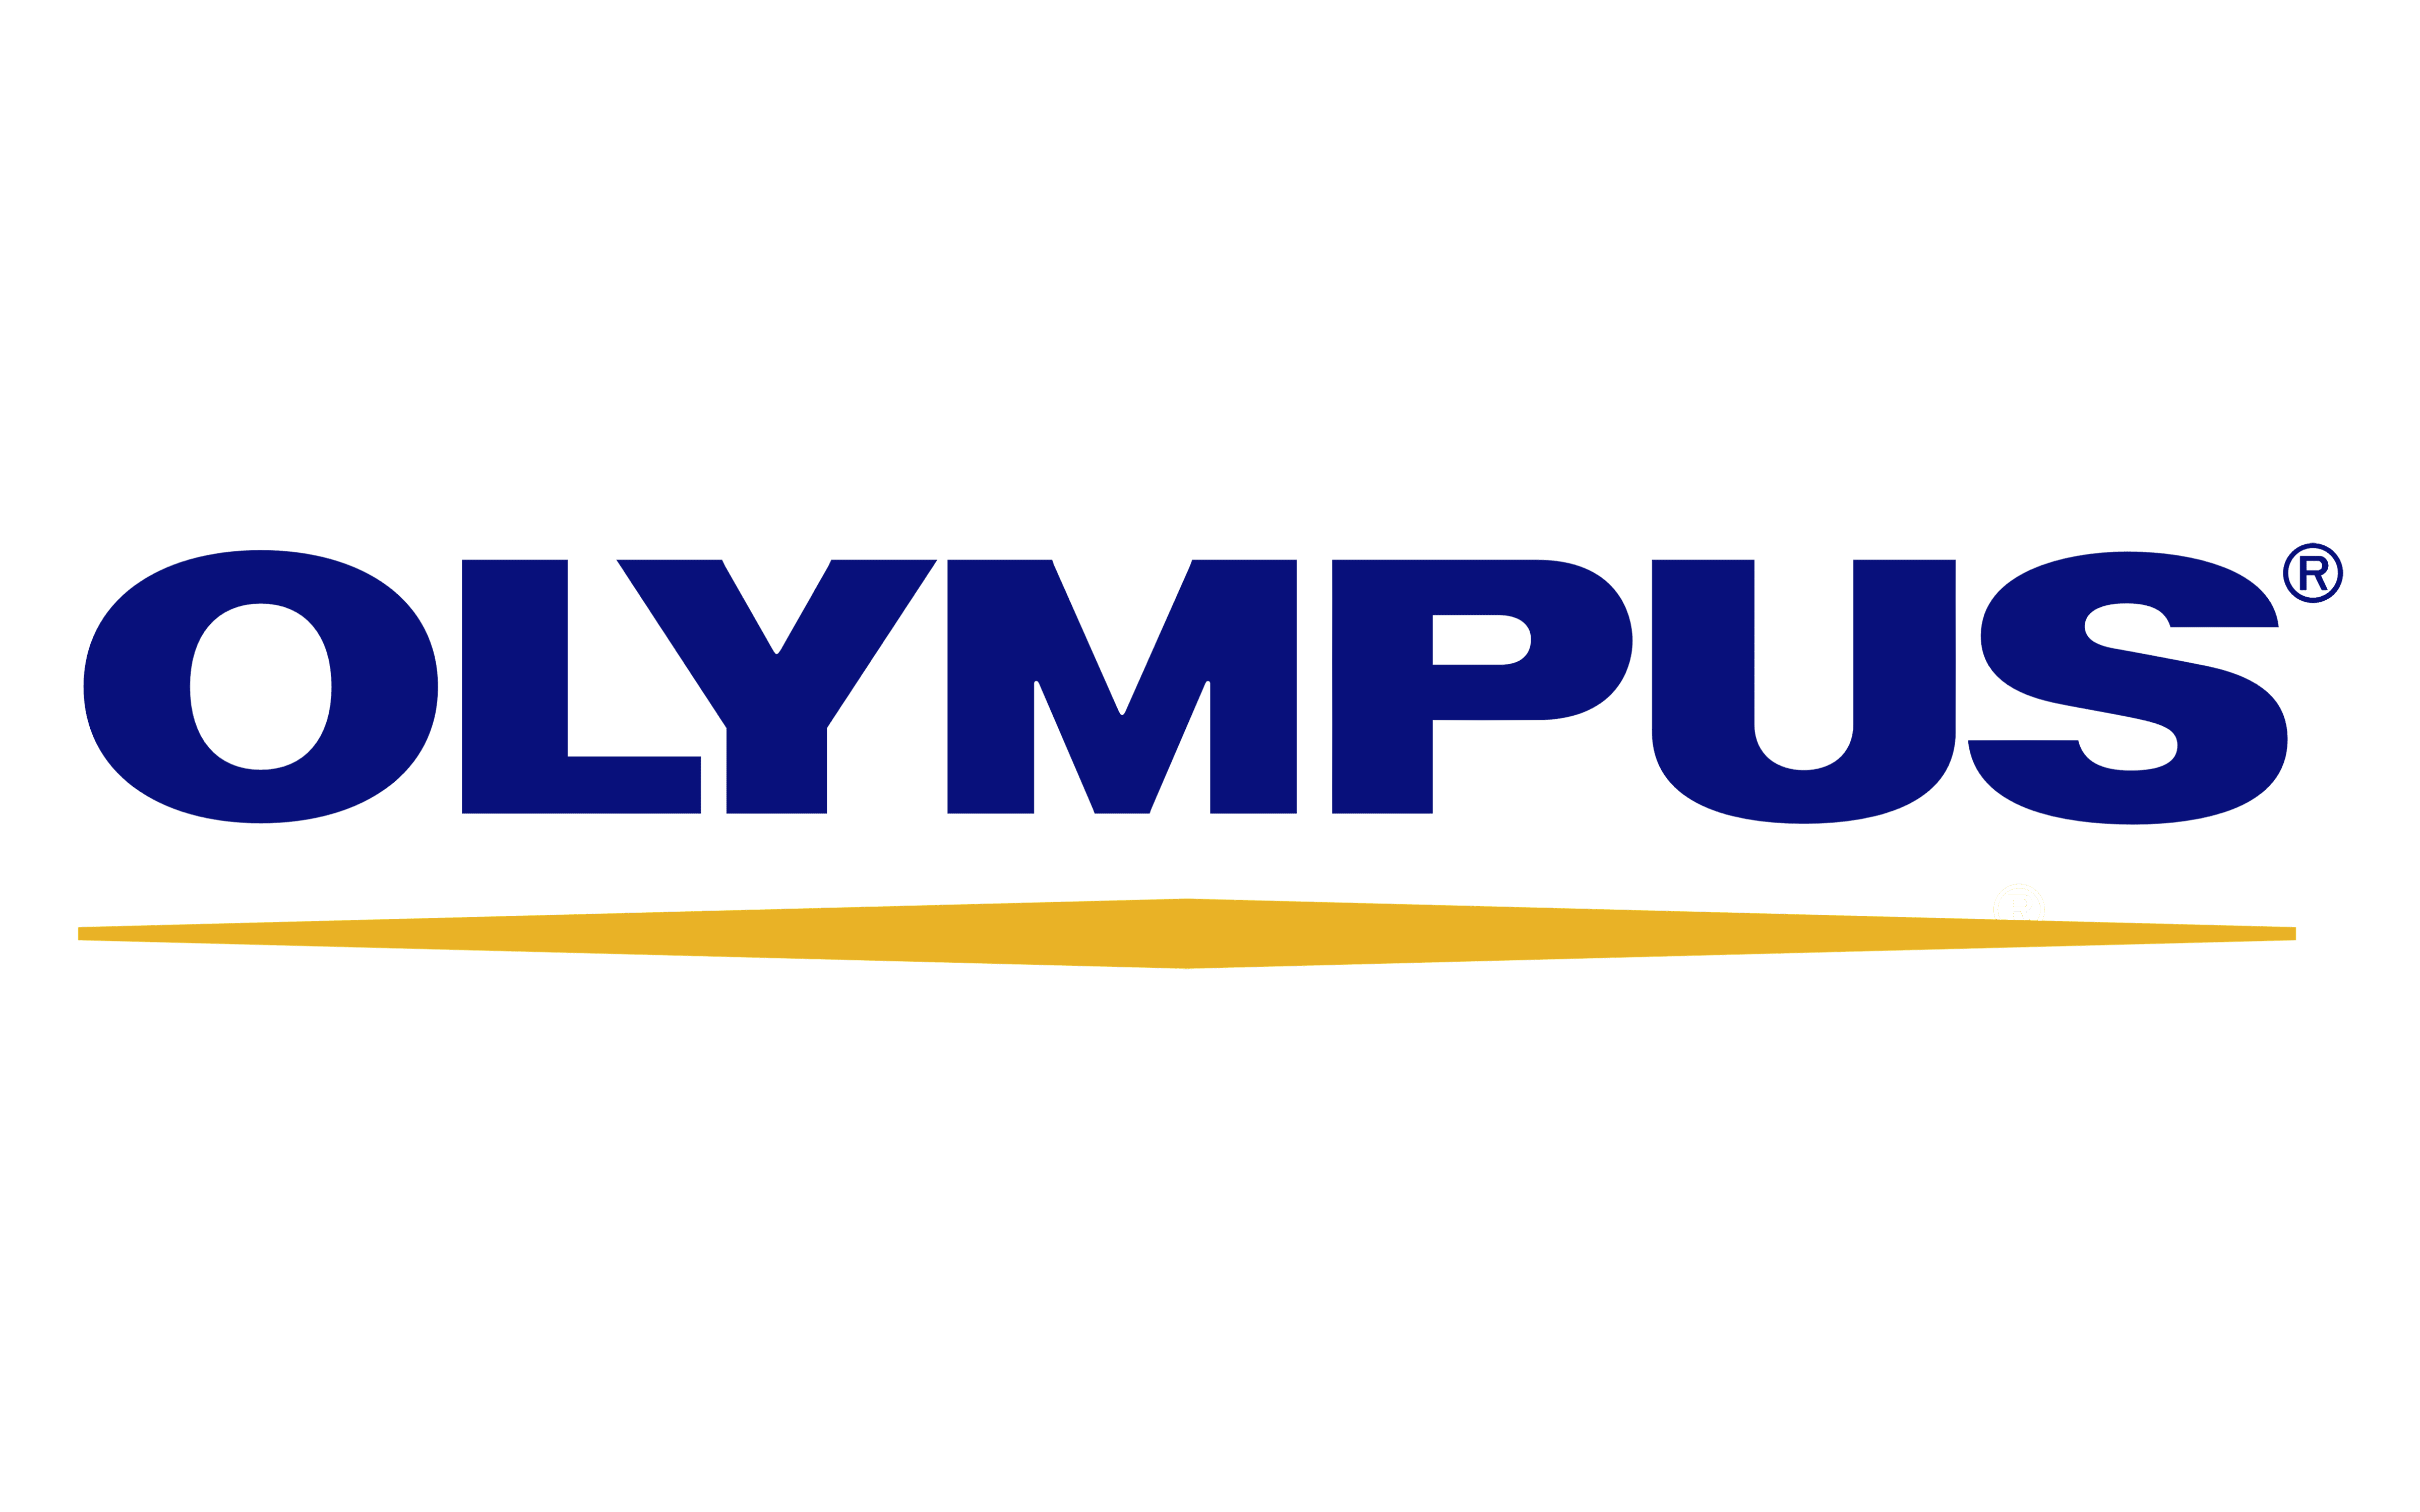 Olympus Symbol